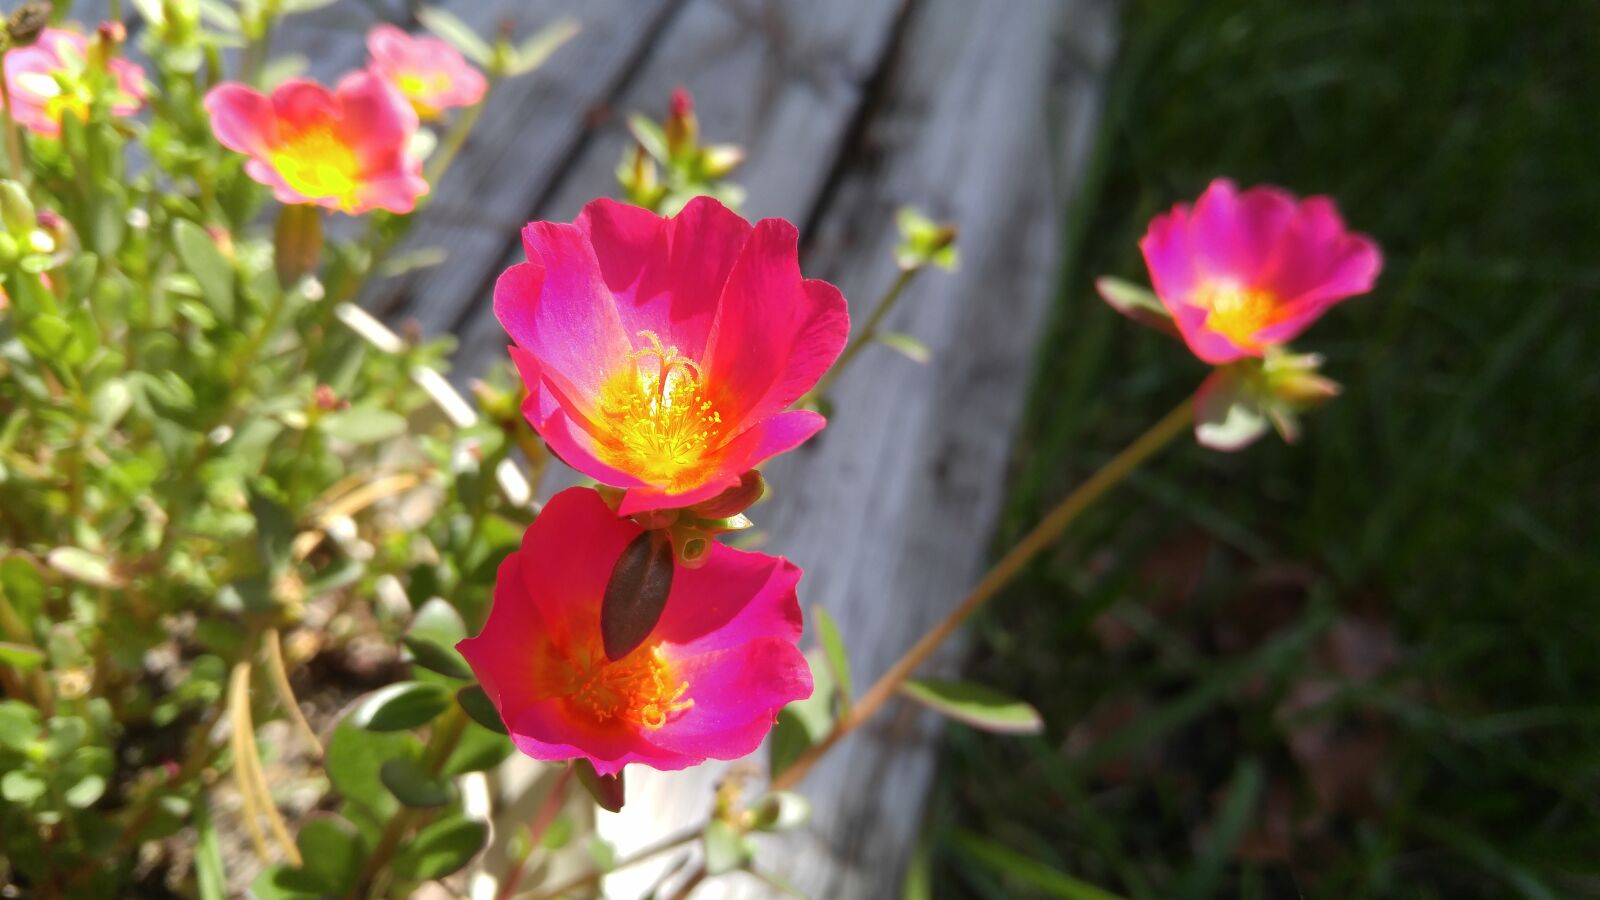 LG V10 sample photo. Flower, garden, bloom photography